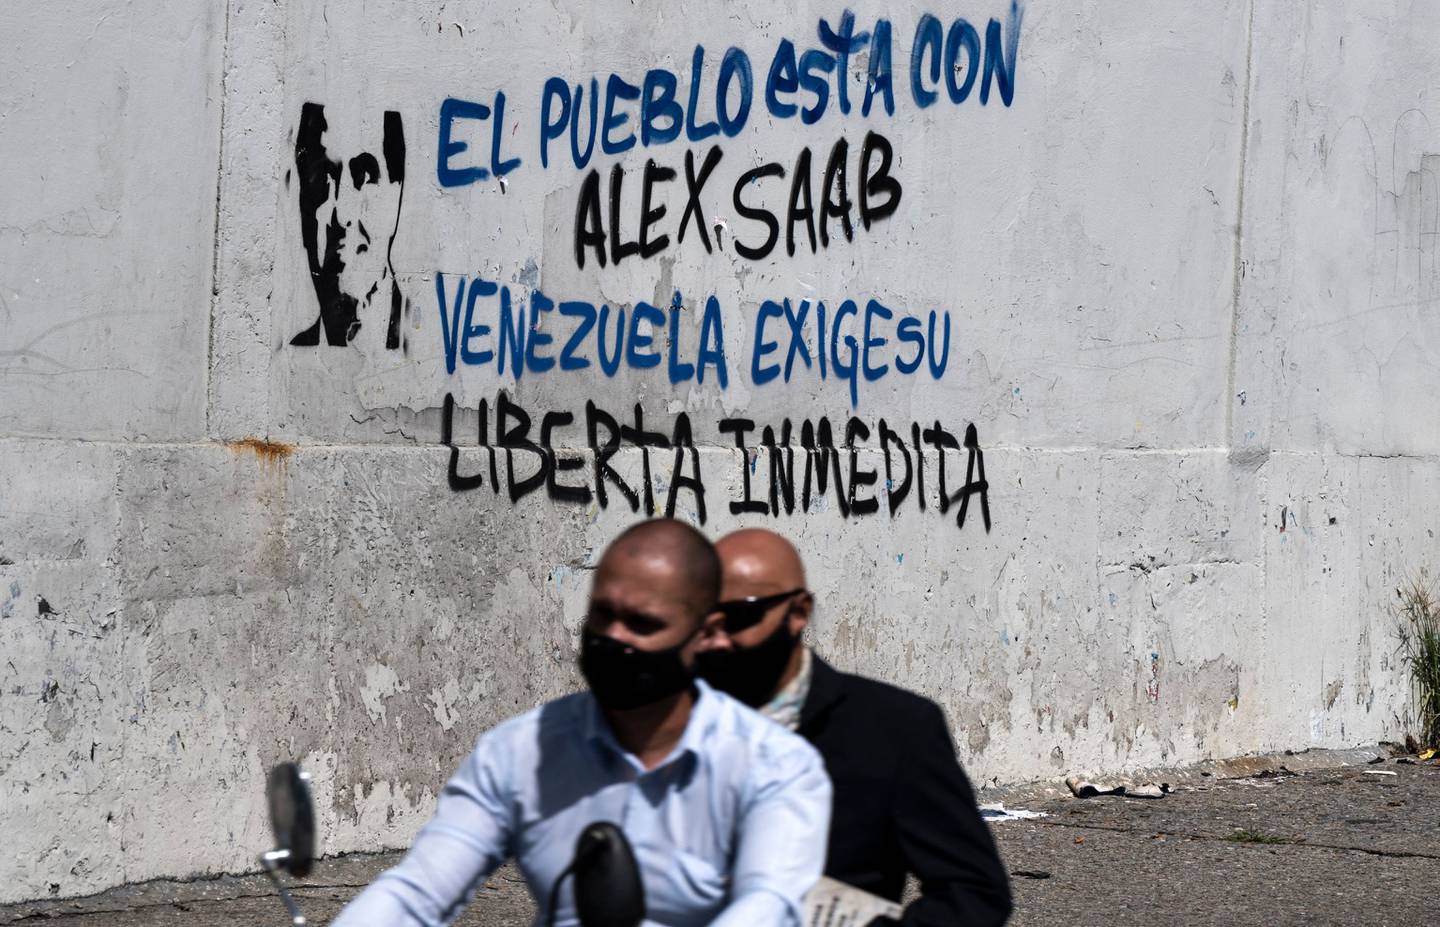 Dos hombres pasan en una motocicleta junto a un graffiti que dice "El pueblo está con Alex Saab... Venezuela exige su liberación inmediata". El nacido en Colombia es considerado un hombre clave del chavismo.